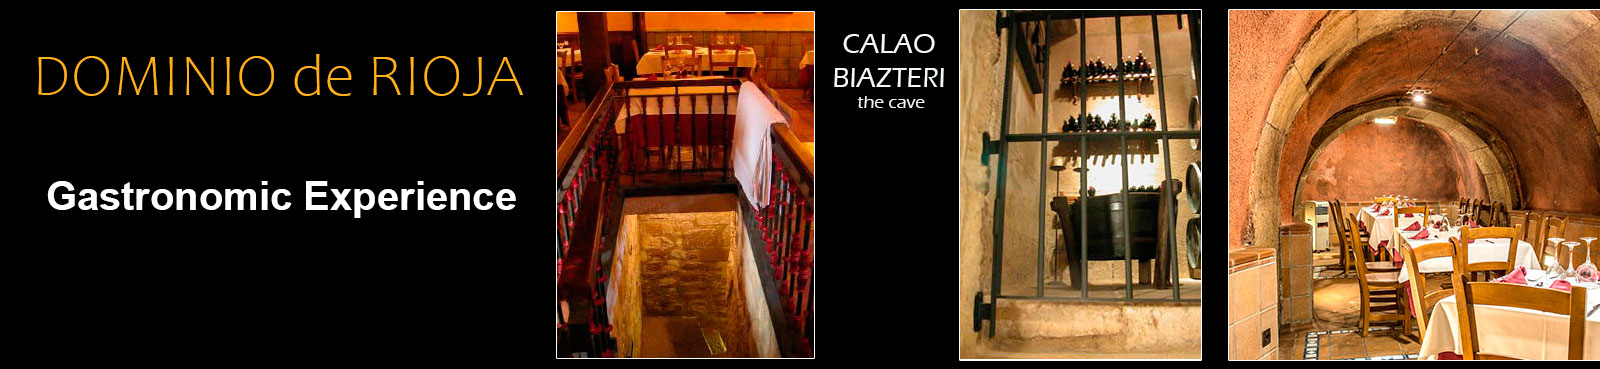 Rest-Calao-Biazteri-1